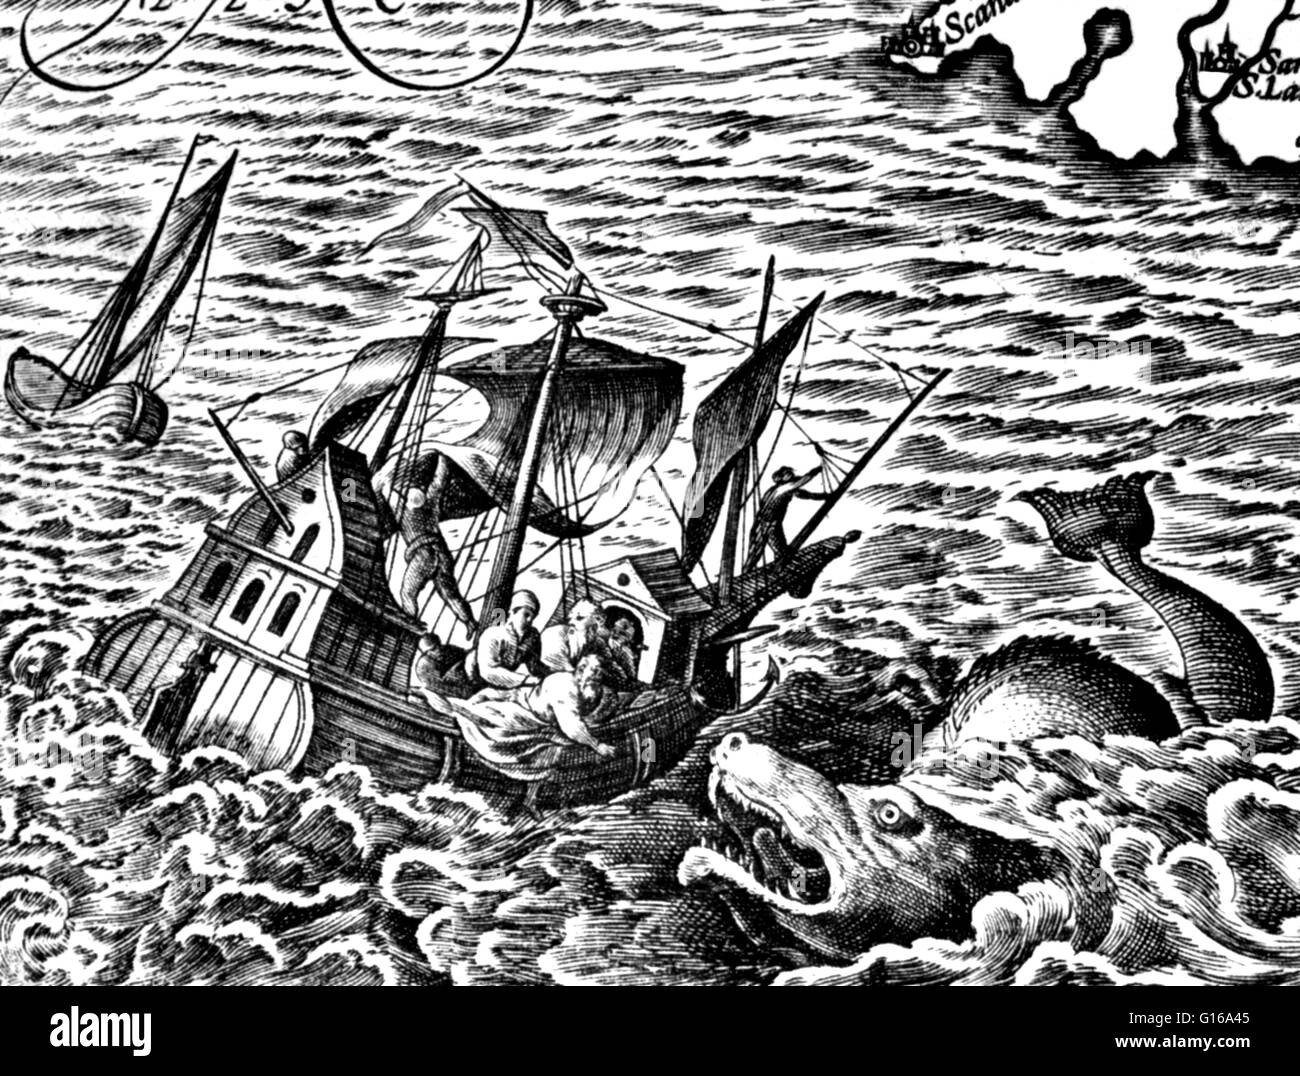 Détail d'une carte dans l'atlas Theatrum orbes terrarium, Abraham Ortelius, 1583. Les vieilles peurs de l'inconnu se reflètent même est ce travail révolutionnaire de la science. Les monstres marins sont des mer mythique ou les créatures légendaires, souvent, croit-on, d'immen Banque D'Images